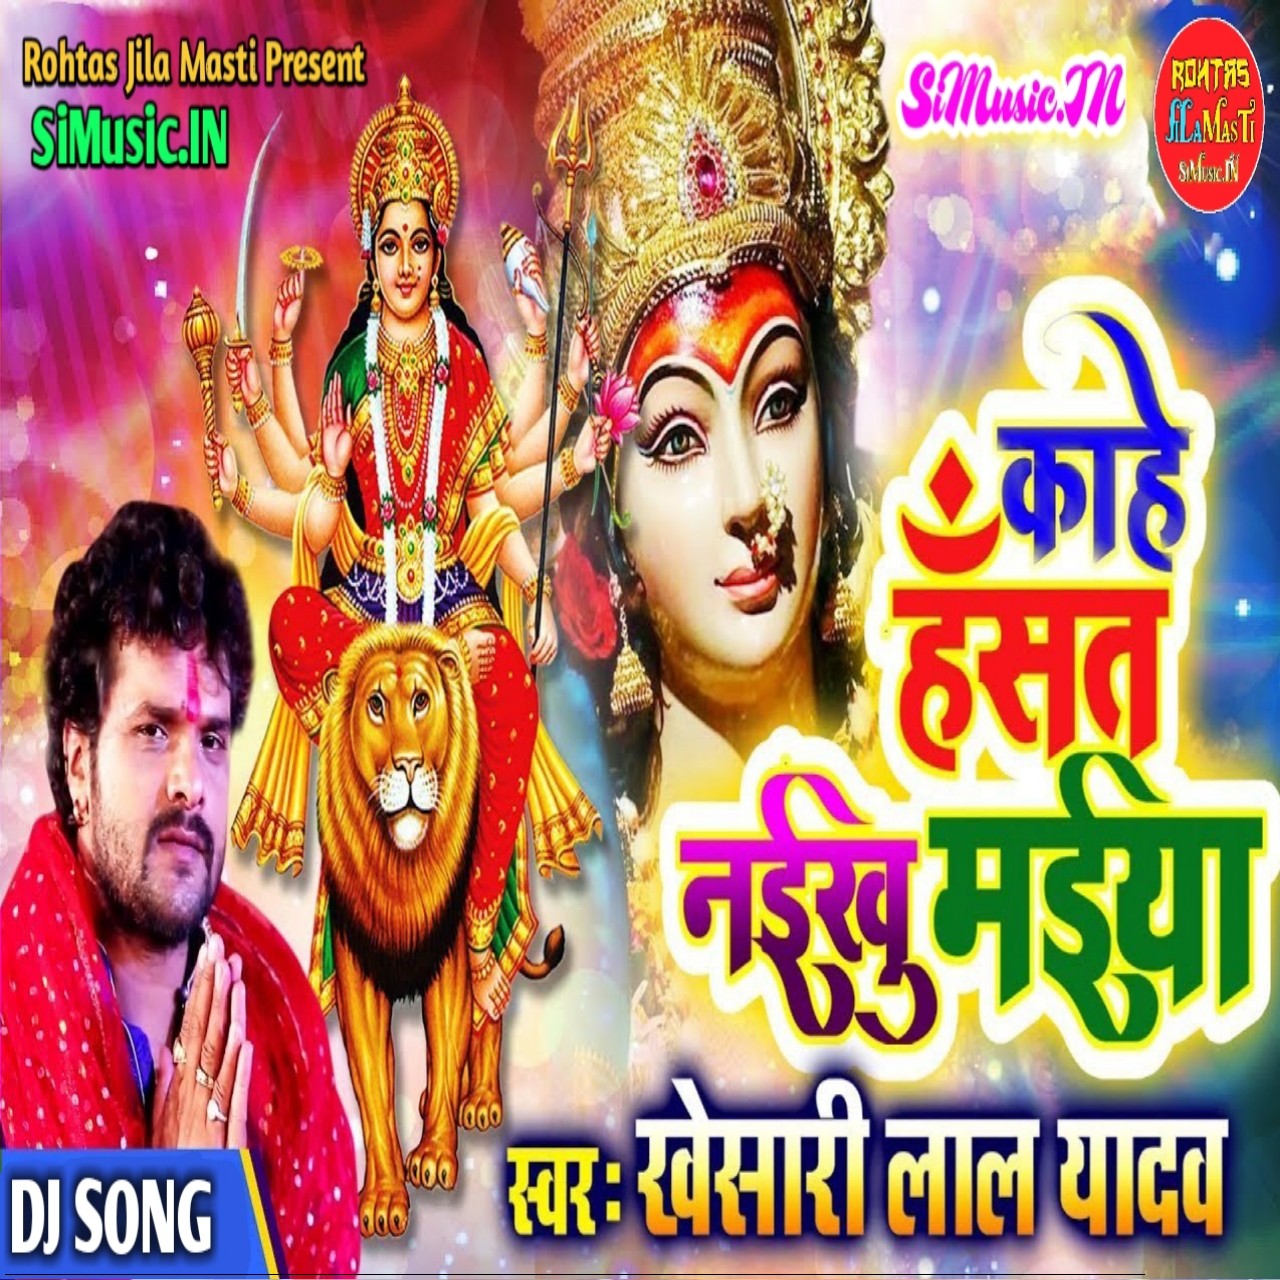 Kahe Hansat Naikhu Maiya Khesari Lal Yadav 2019 Mp3 Songs